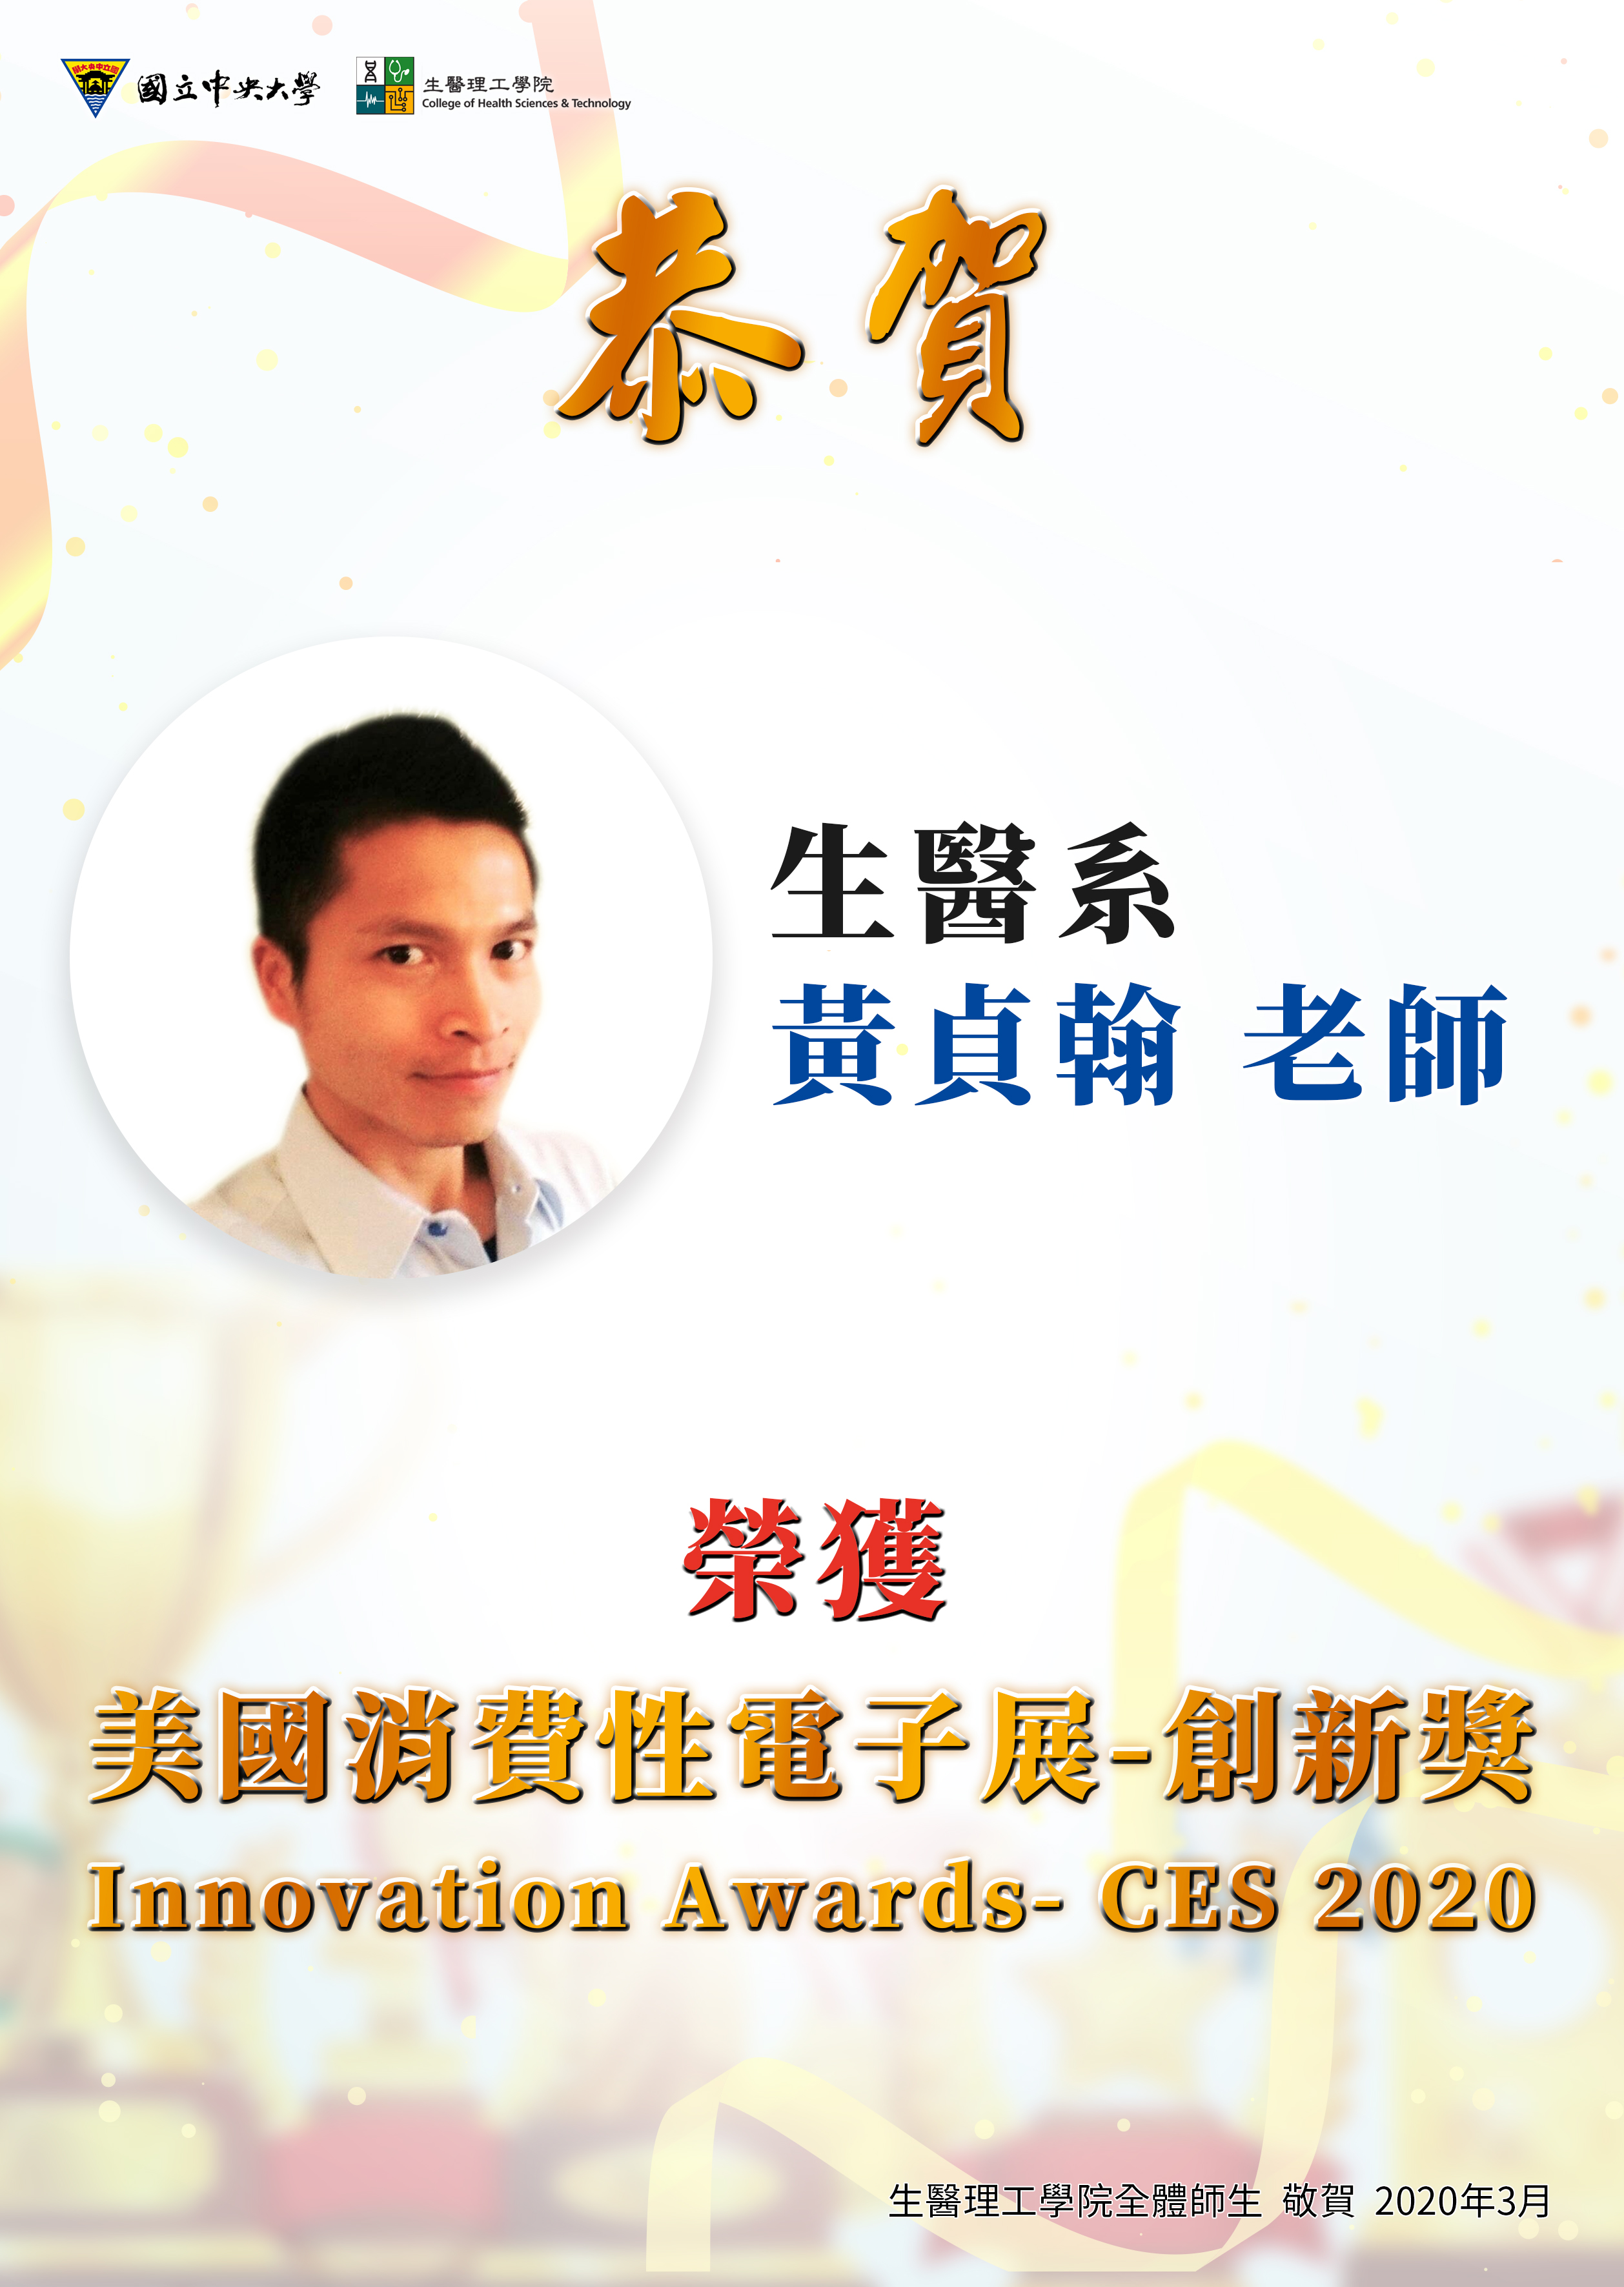 【恭賀】本院生醫系黃貞翰助理教授榮獲「美國消費性電子展-創新獎 Innovation Awards- CES 2020」